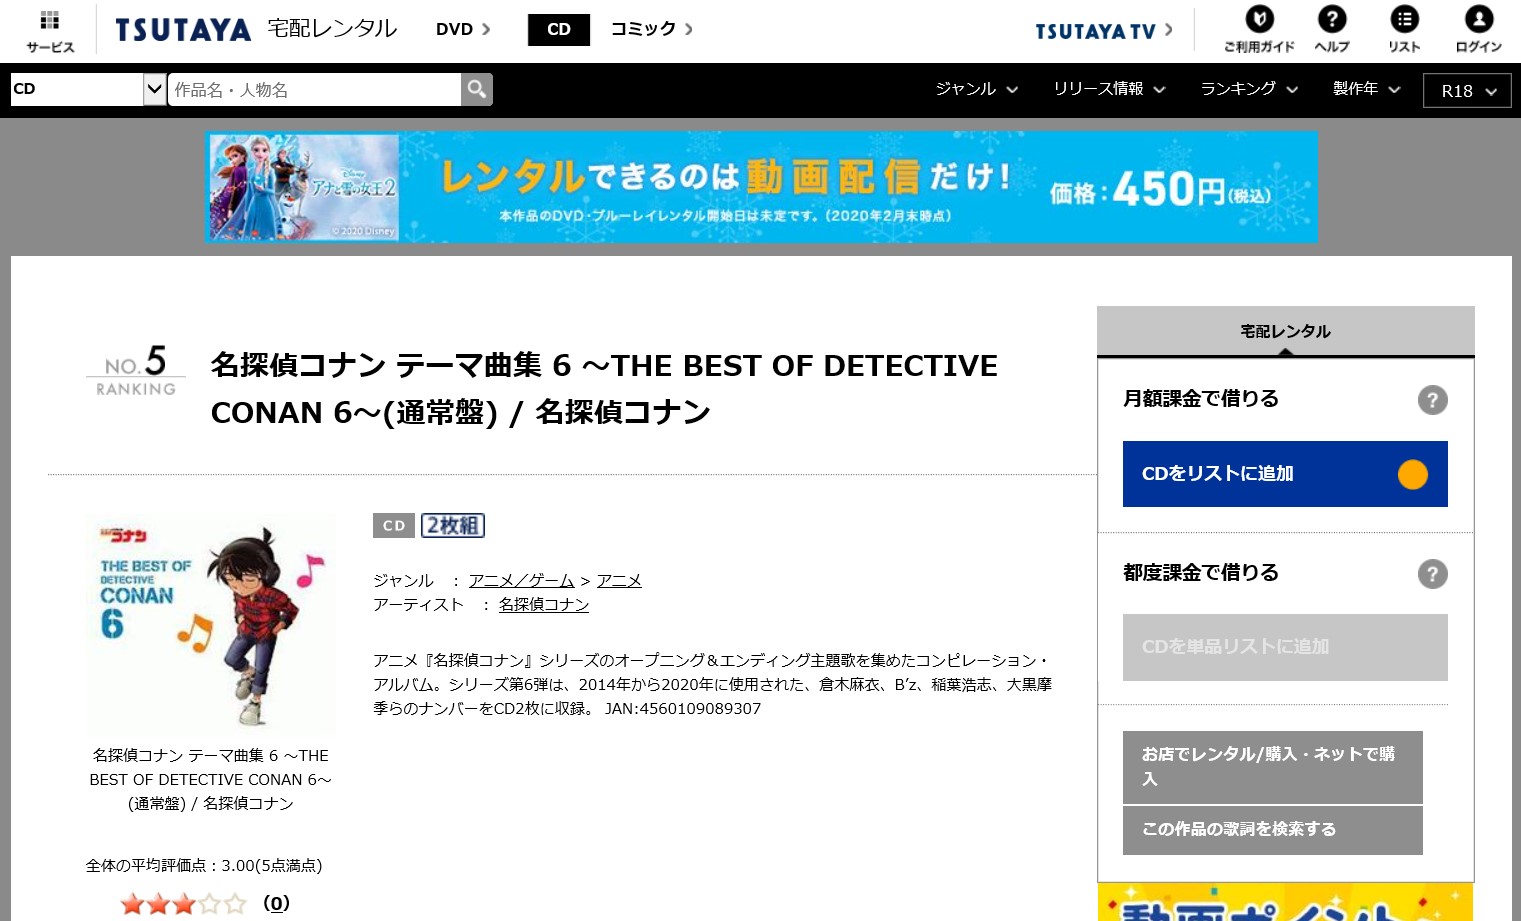 名探偵コナン 名探偵コナン テーマ曲集 6 The Best Of Detective Conan 6 アルバム曲をmp3でダウンロードしてフル視聴する方法 音楽の森